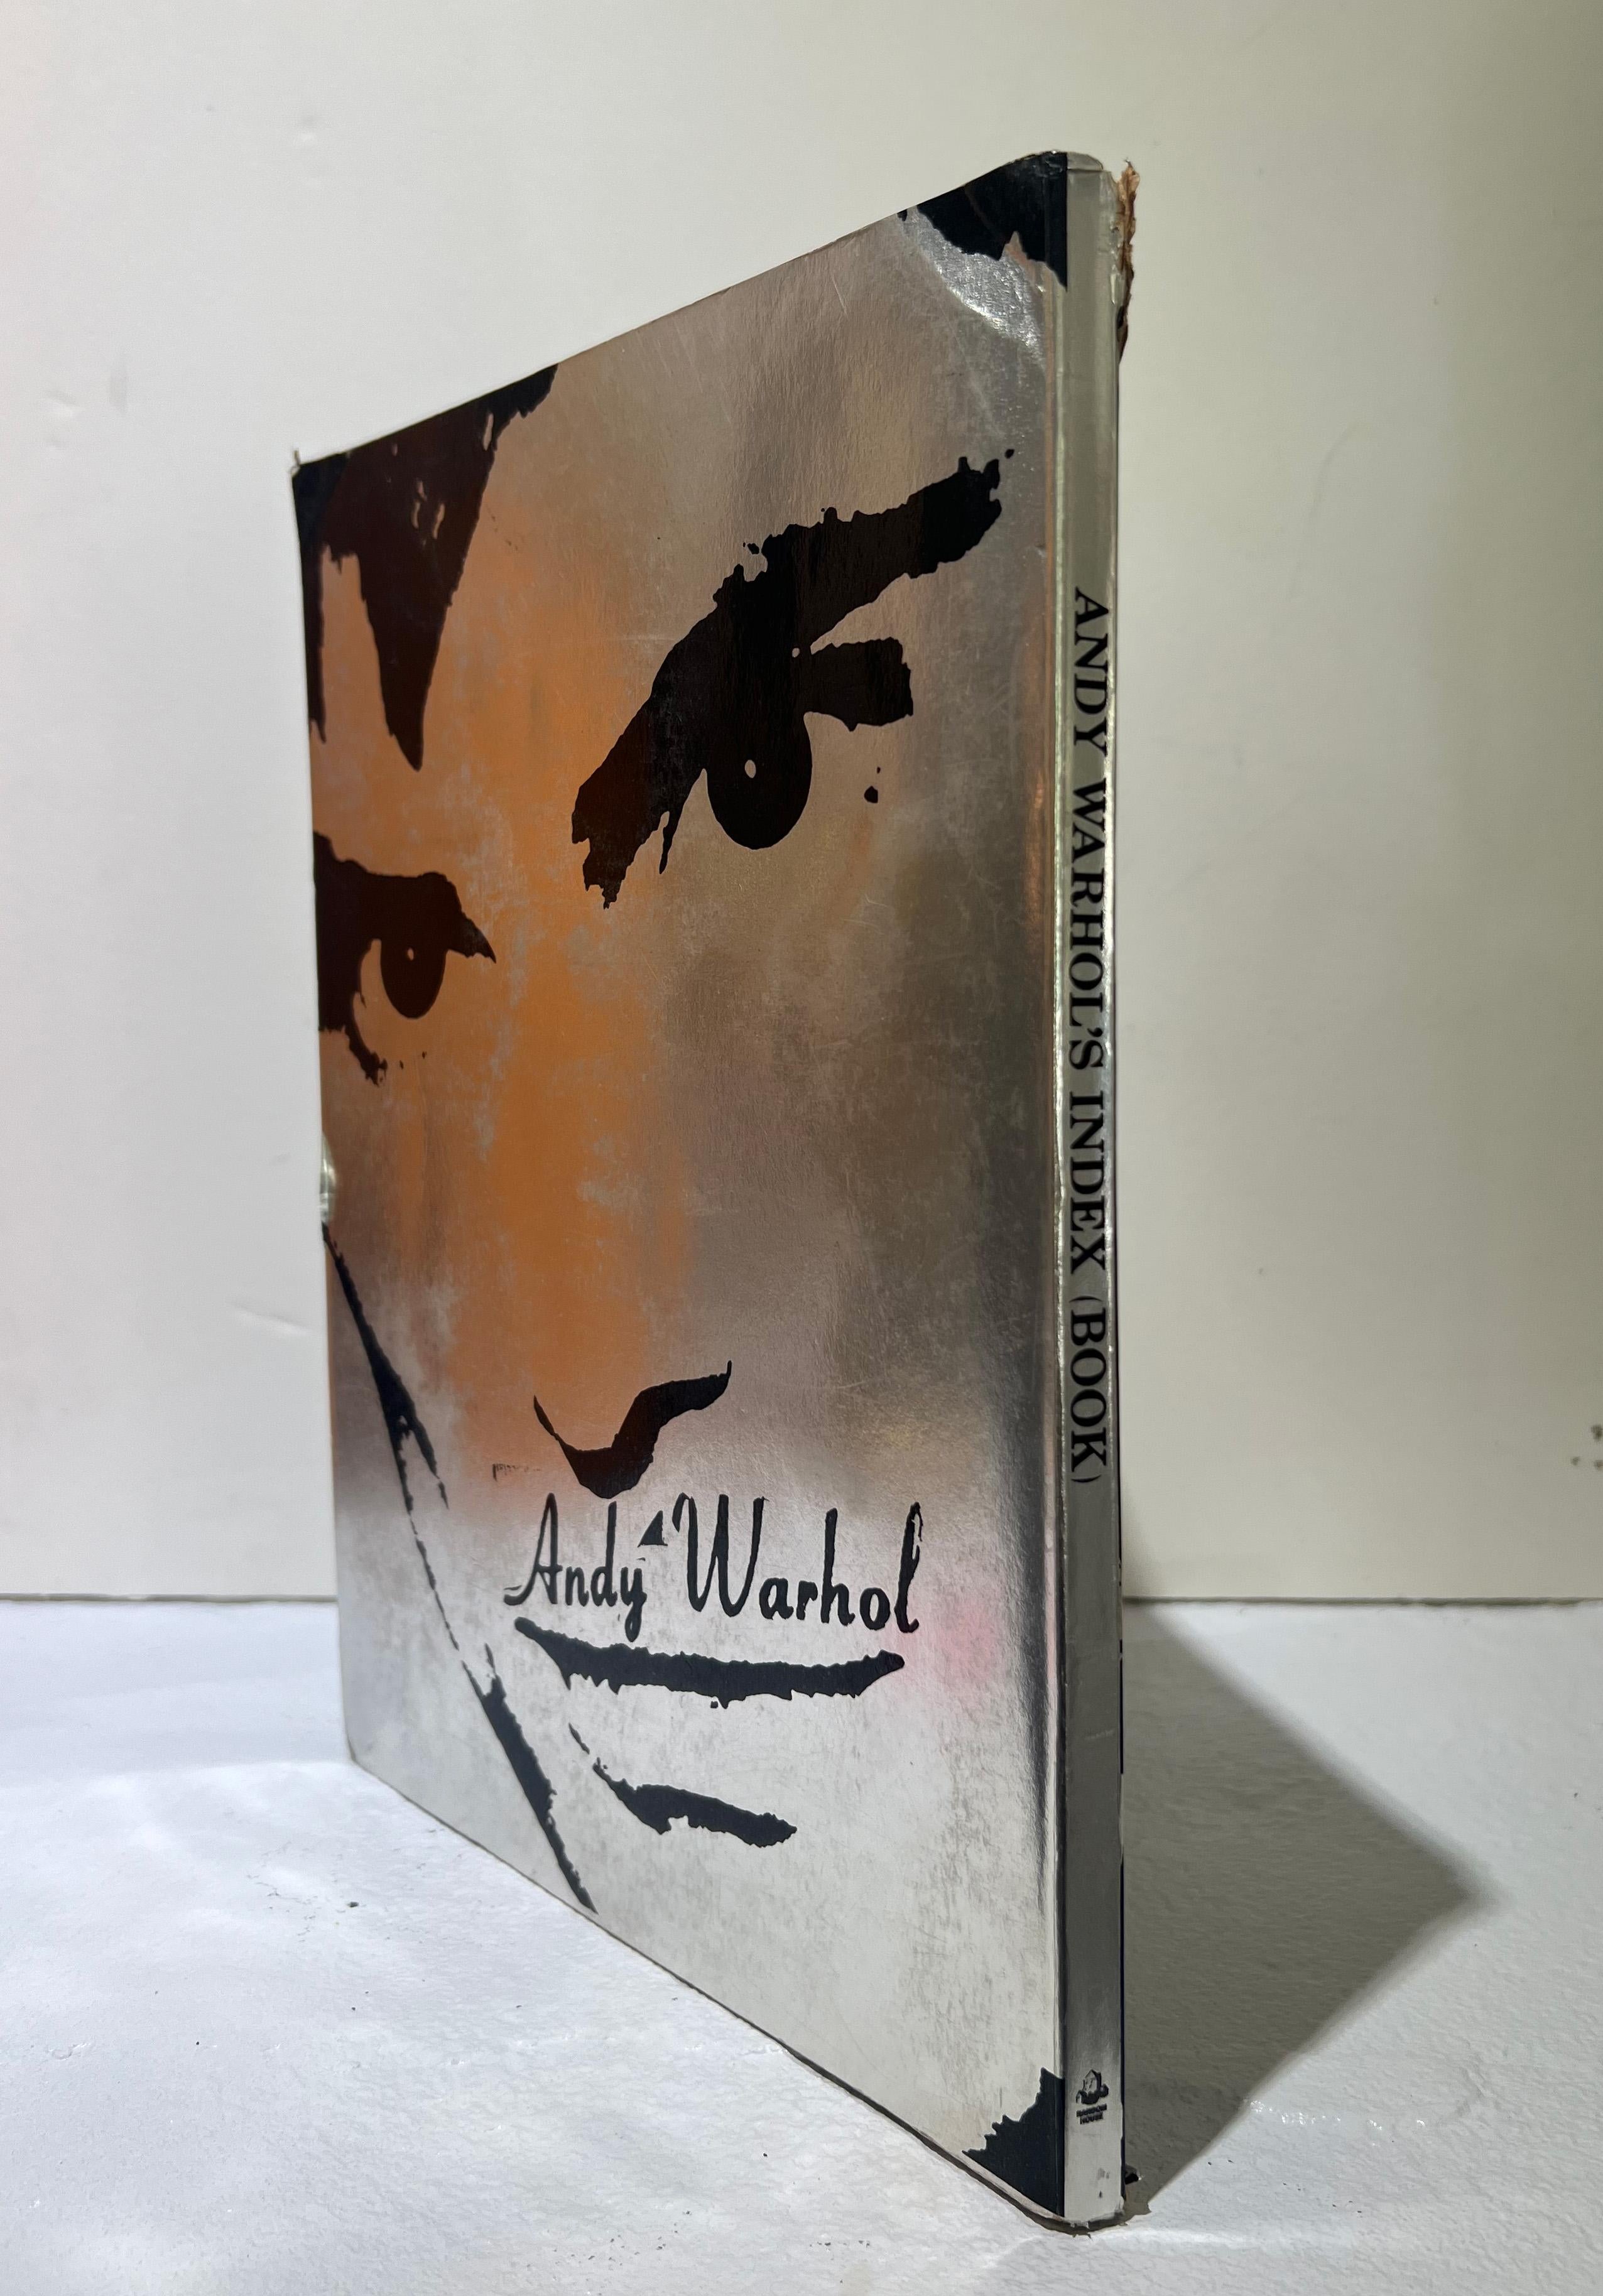 Andy Warhol Abstract Photograph - POSTWAR Rare BRILLO Andy WARHOL Index Book Brillo Hologram